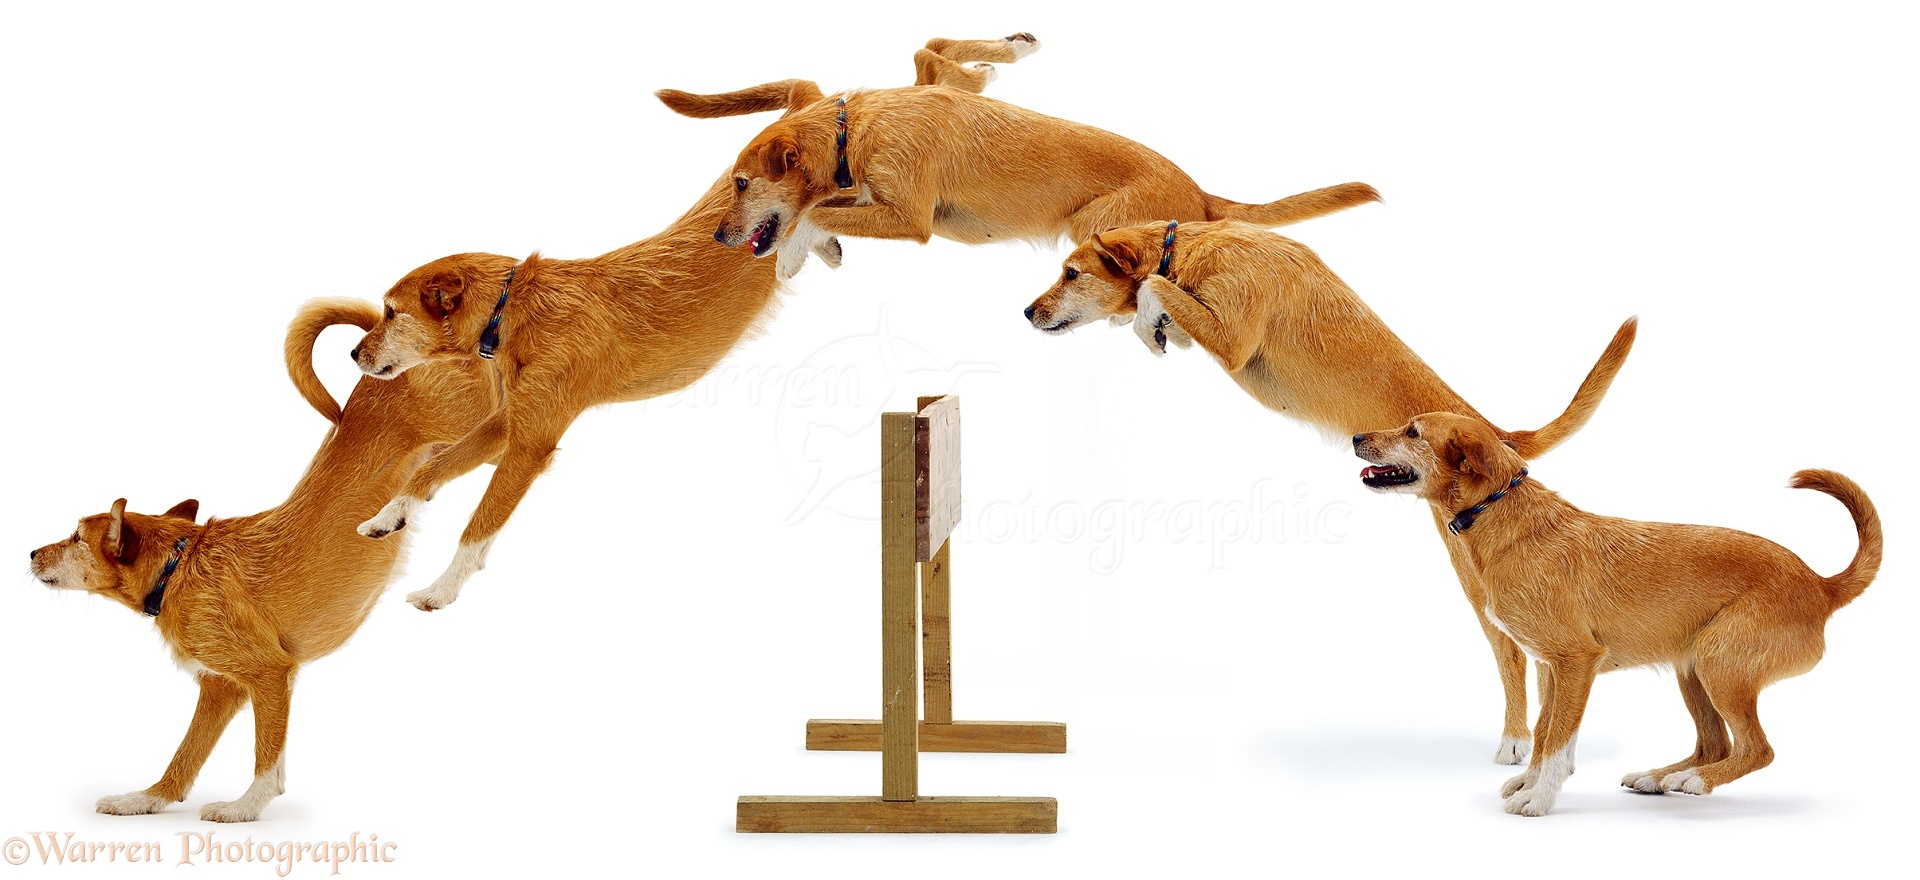 01129-Dog-jumping-multiple-image-white-b